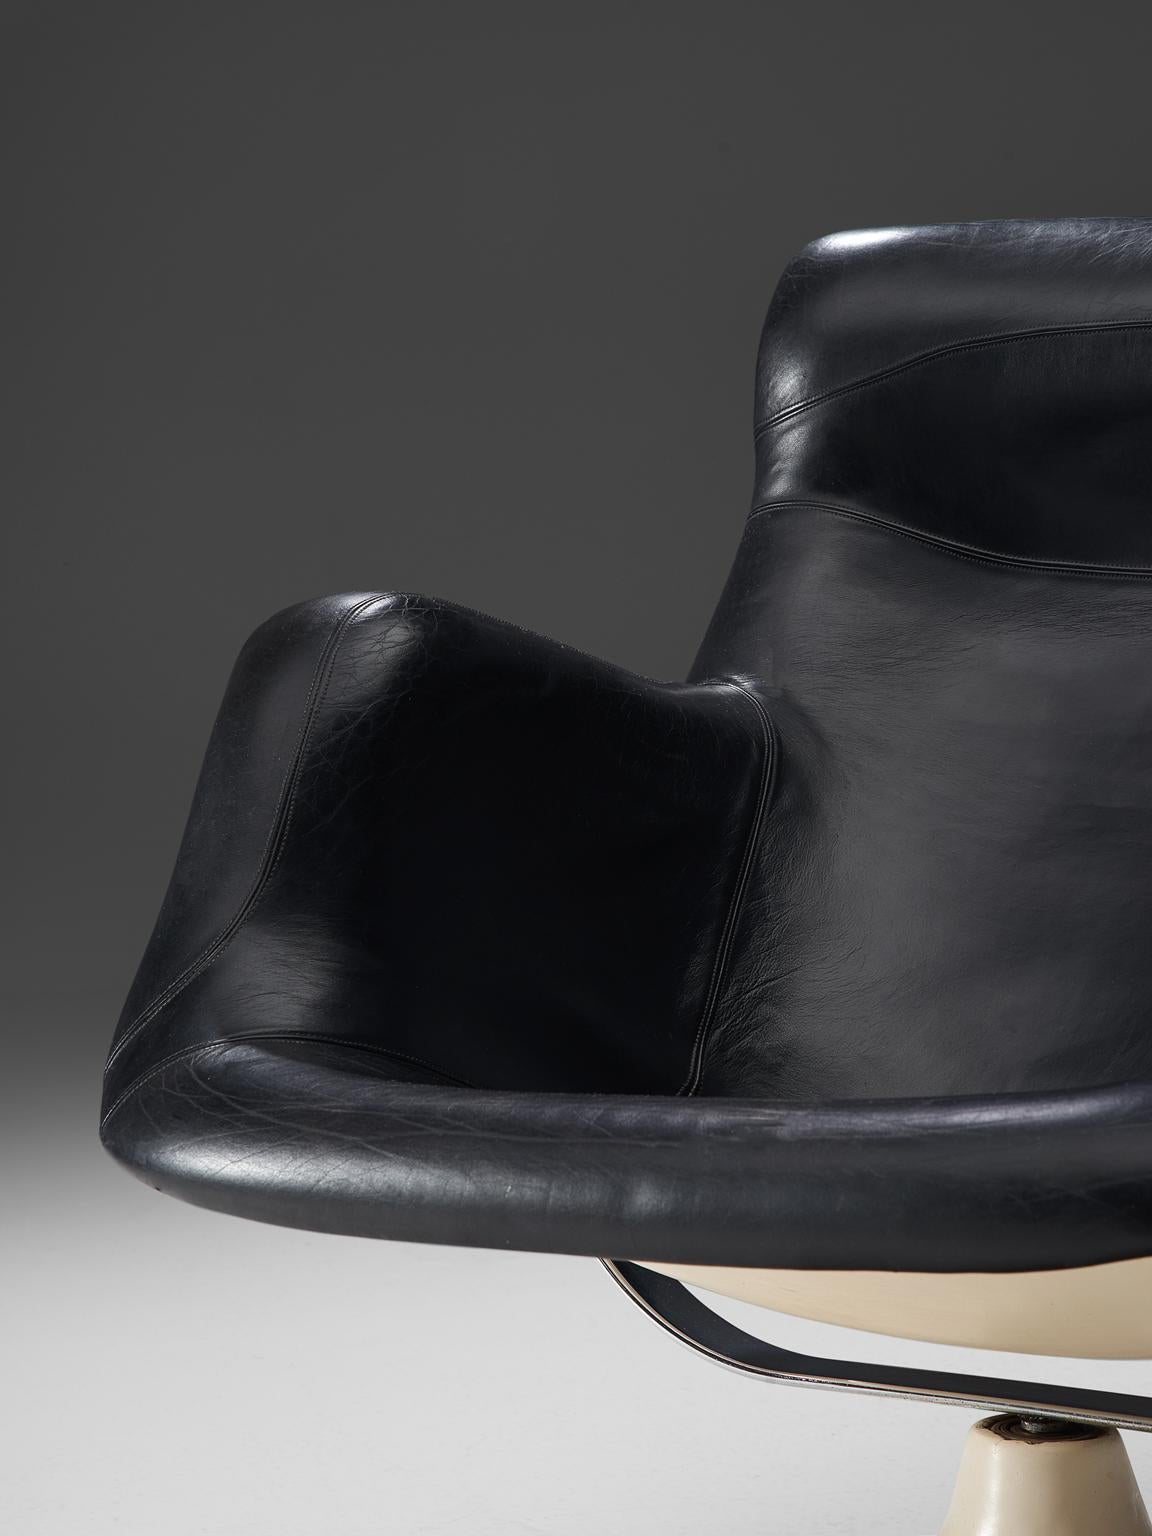 Metal Yrjo Kukkapuro 'Karuselli' Lounge Chair in Black Leather Upholstery